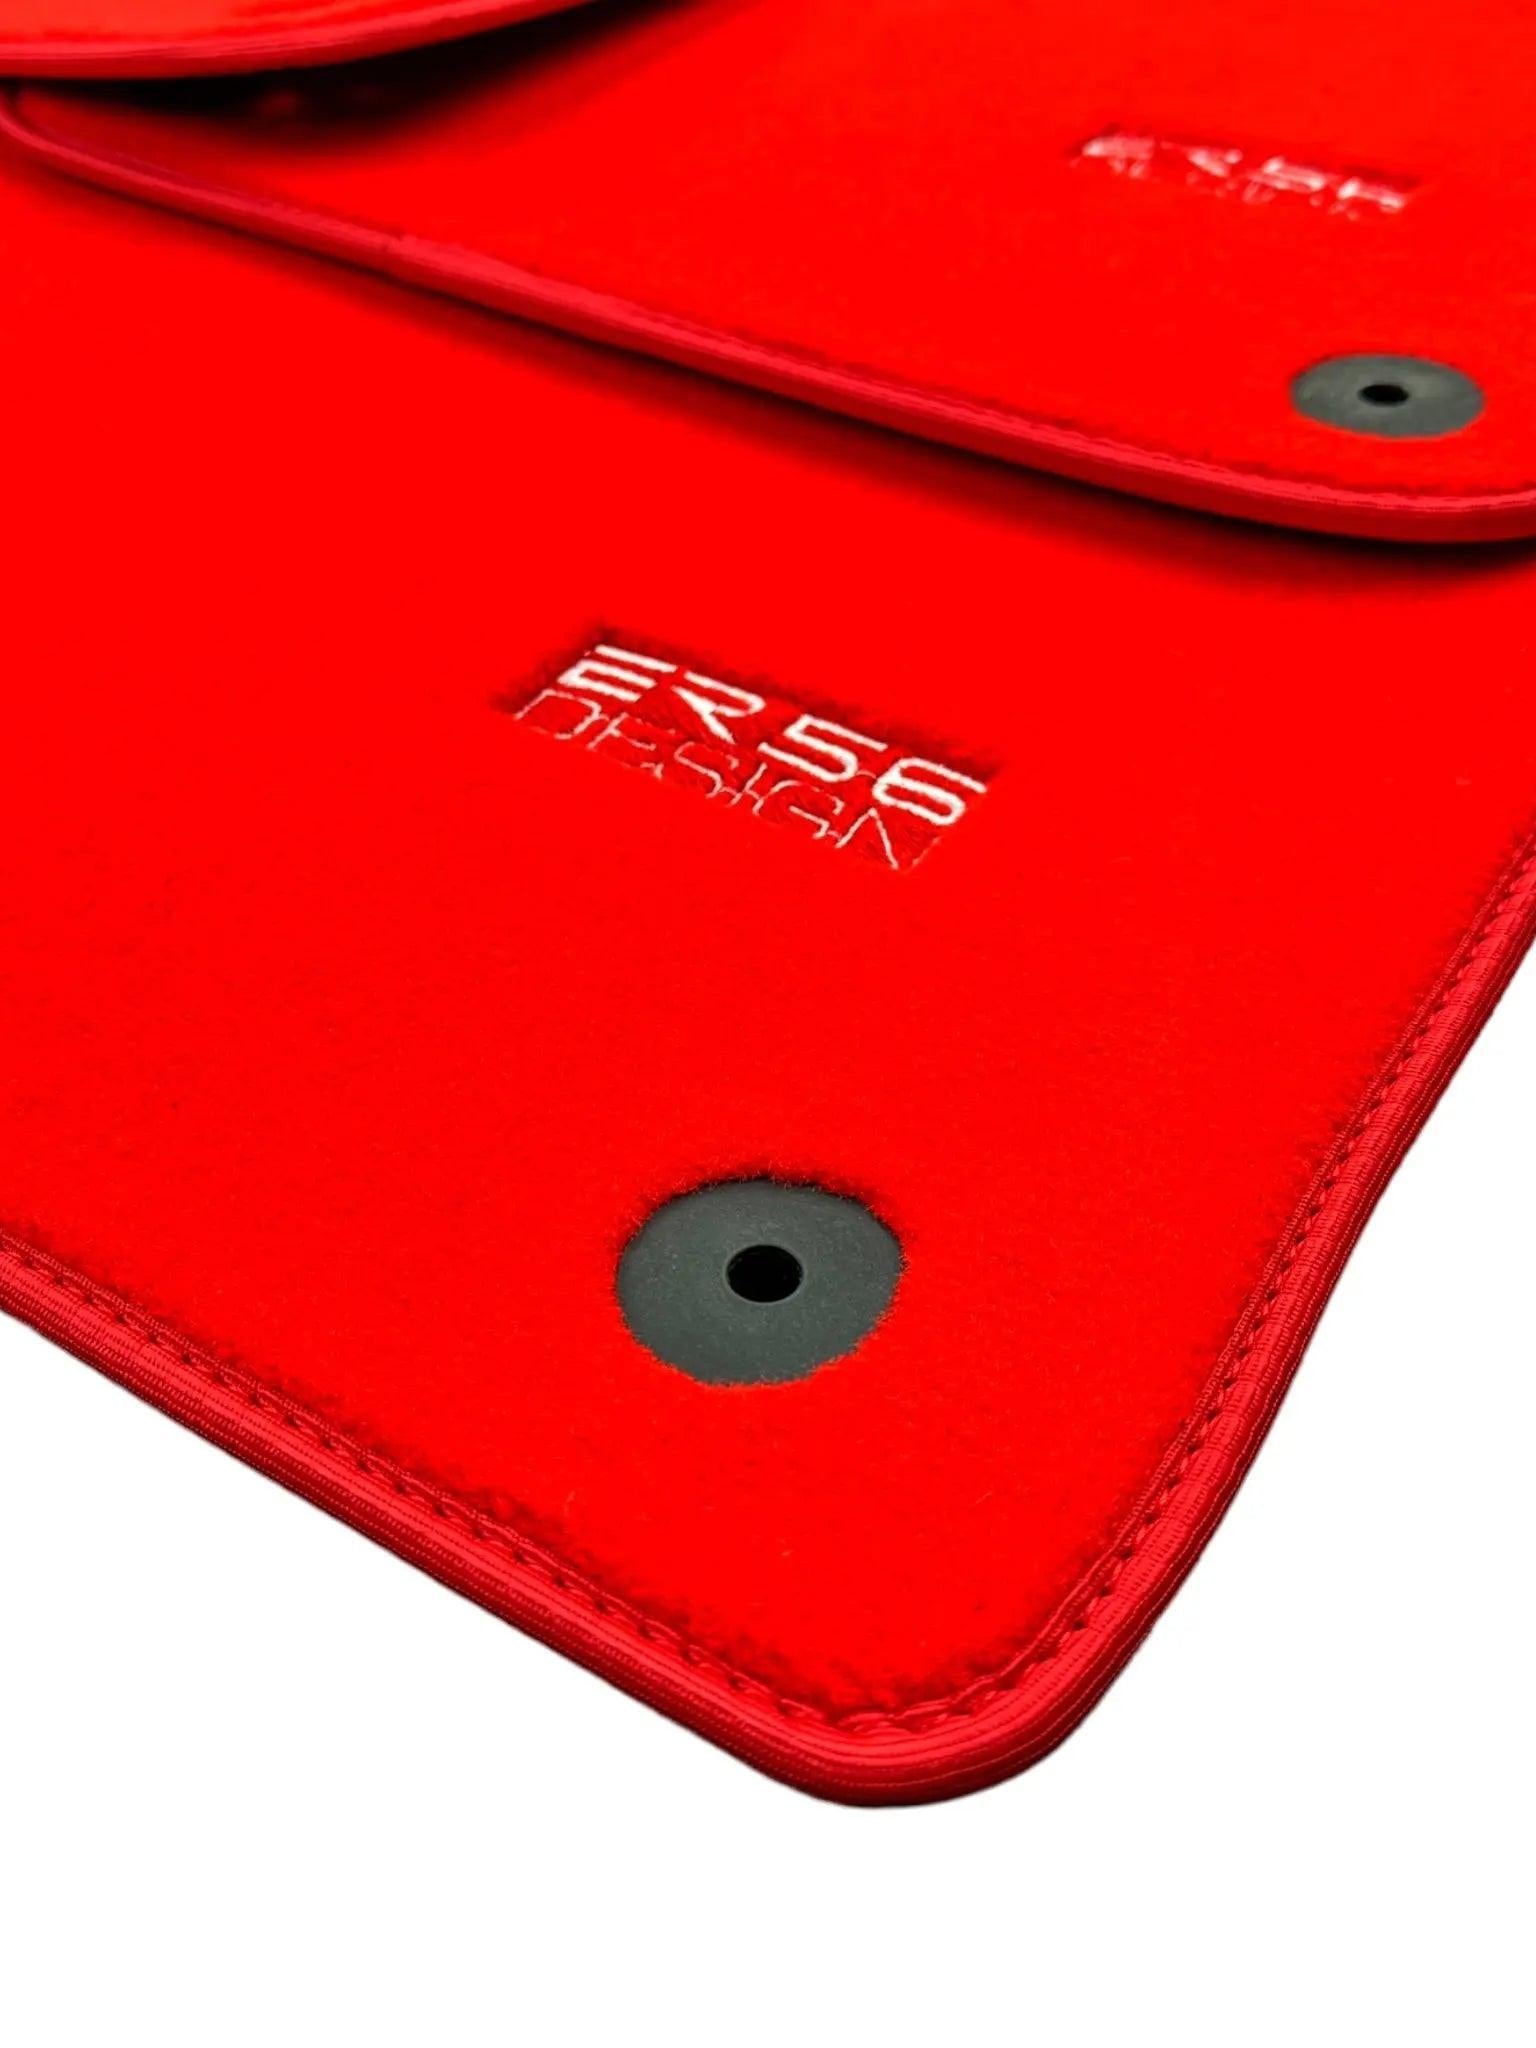 Red Floor Mats for Audi A3 - 3-door Hatchback (2003-2012) | ER56 Design